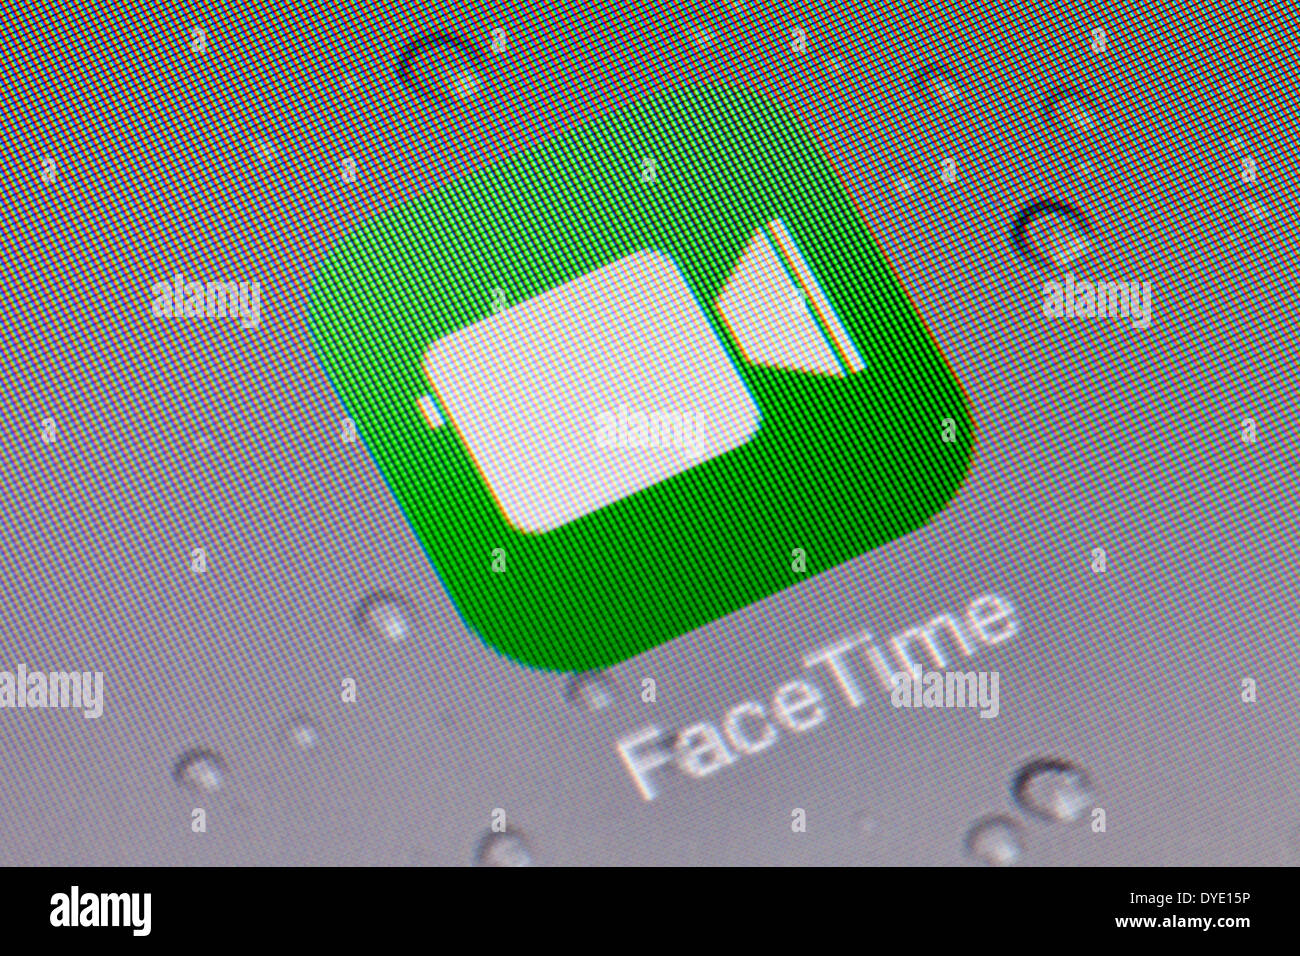 facetime app icon